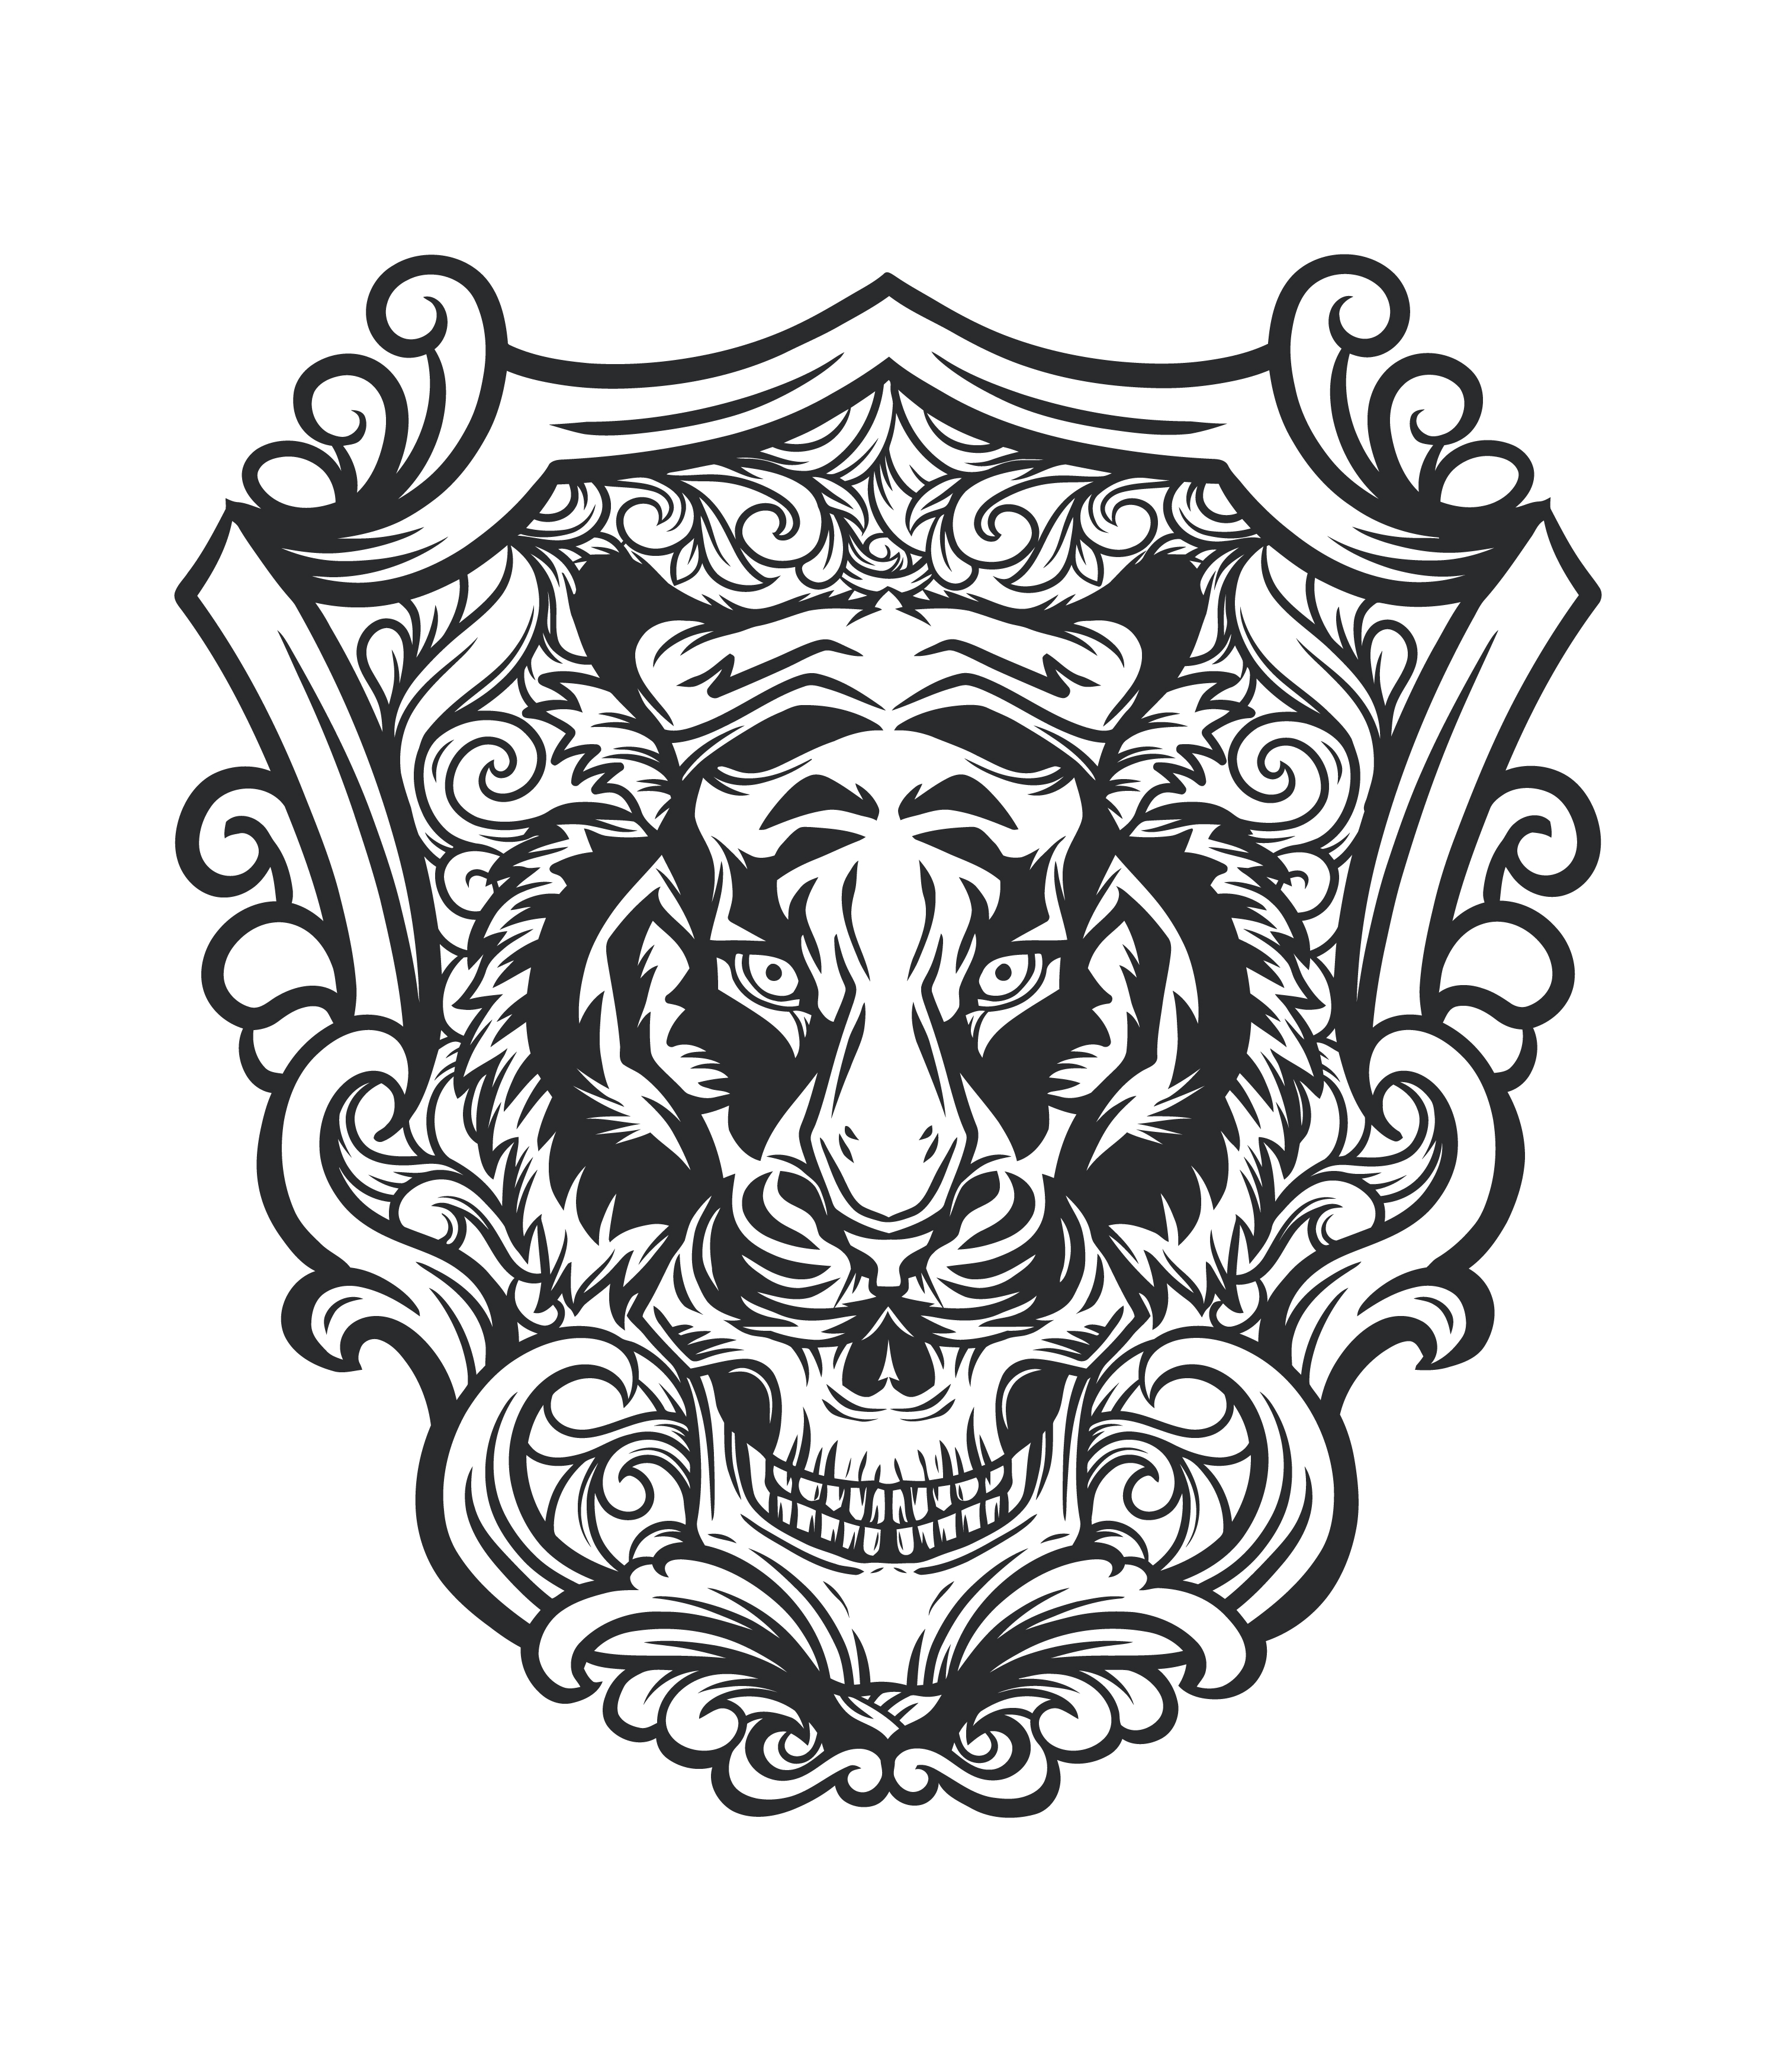 Tiger skull tattoo-style design 1338886 Vector Art at Vecteezy